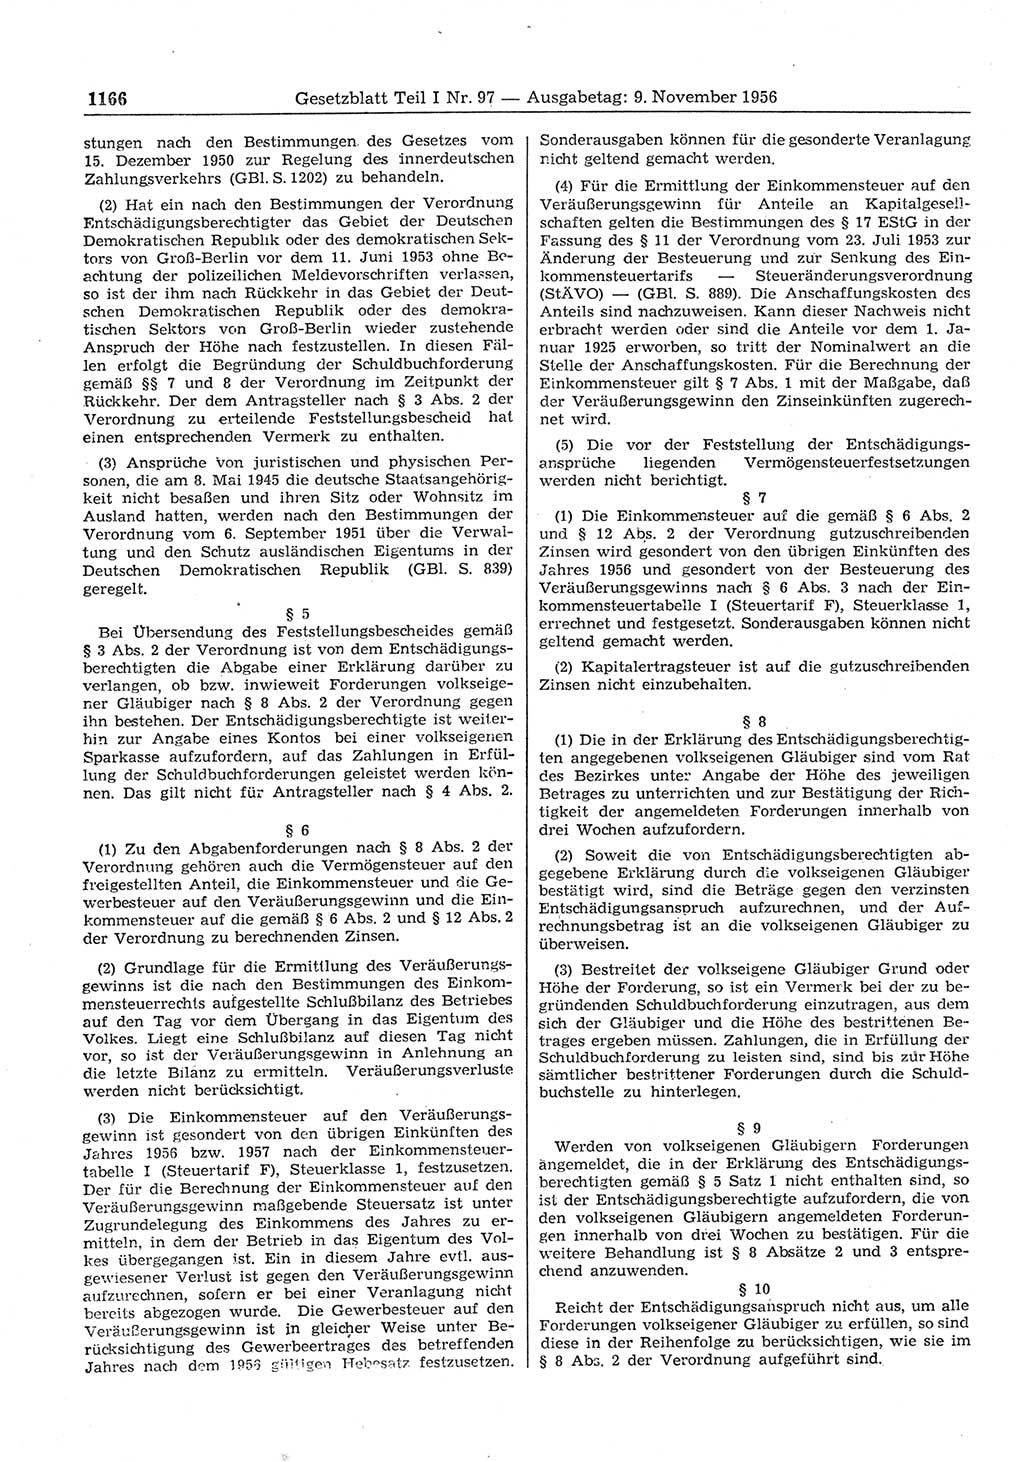 Gesetzblatt (GBl.) der Deutschen Demokratischen Republik (DDR) Teil Ⅰ 1956, Seite 1166 (GBl. DDR Ⅰ 1956, S. 1166)